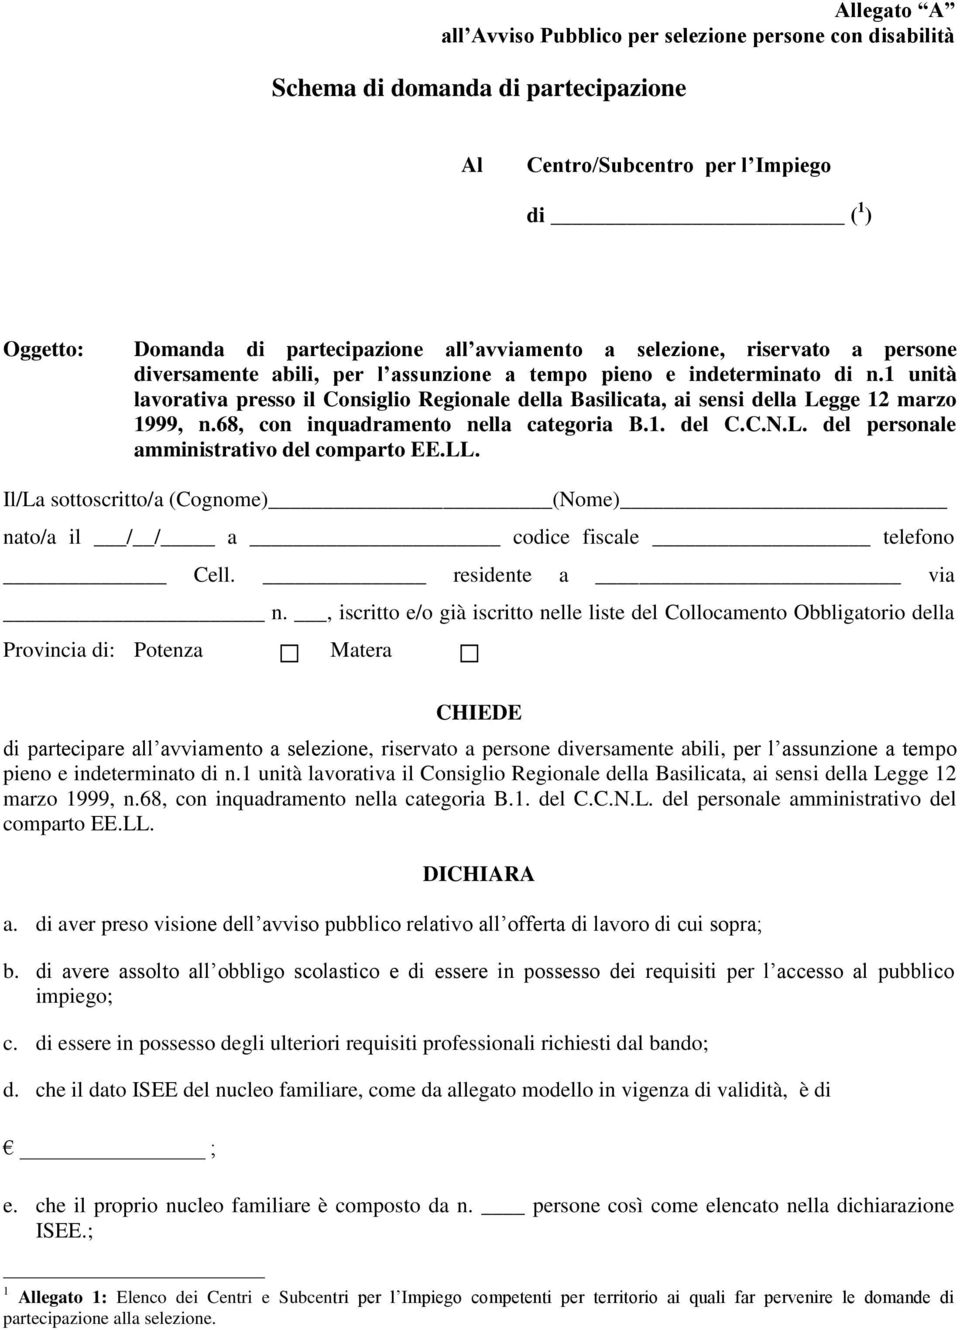 1 unità lavorativa presso il Consiglio Regionale della Basilicata, ai sensi della Legge 12 marzo 1999, n.68, con inquadramento nella categoria B.1. del C.C.N.L. del personale amministrativo del comparto EE.